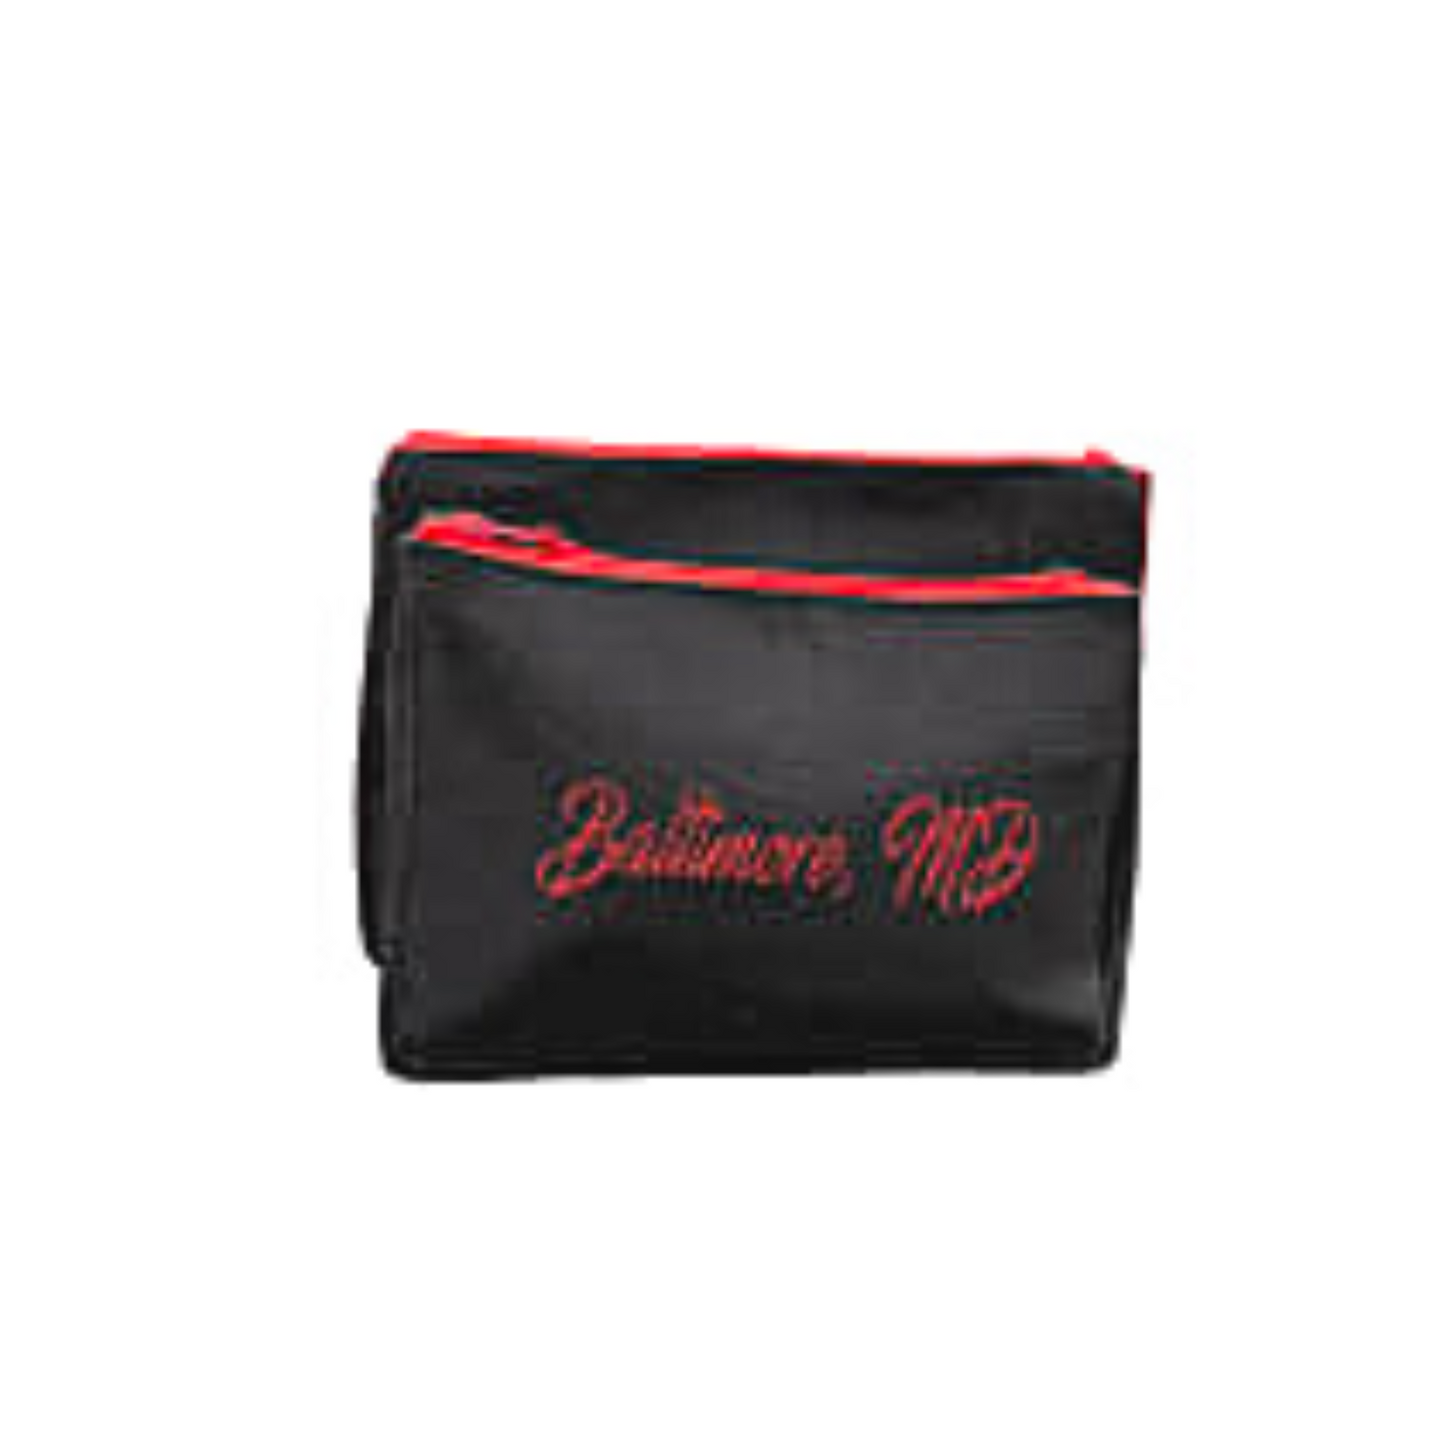 Embroidered Baltimore Skyline Makeup Bag Set